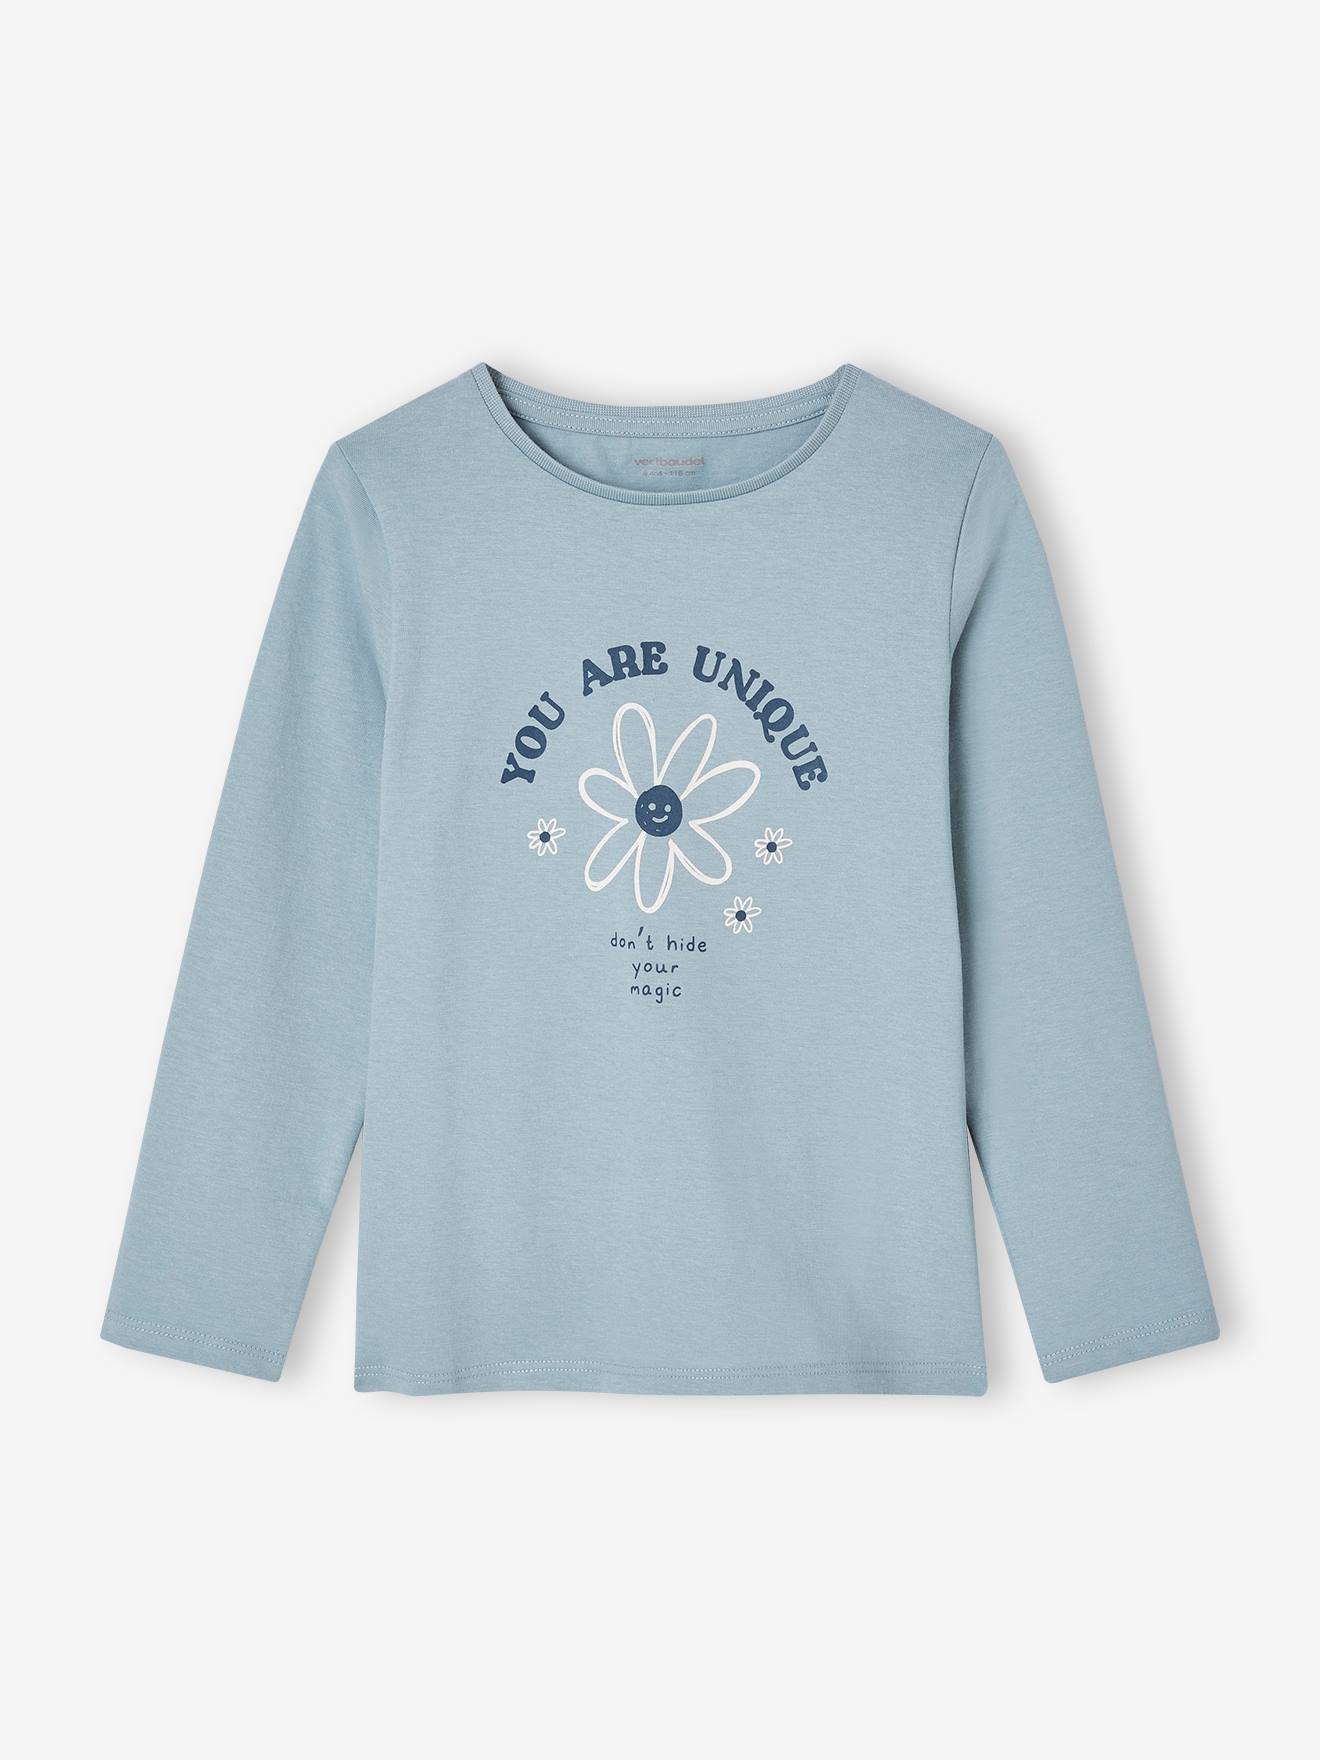 Mädchen-Oberteile - - T-Shirts jetzt Co. kaufen! & vertbaudet online